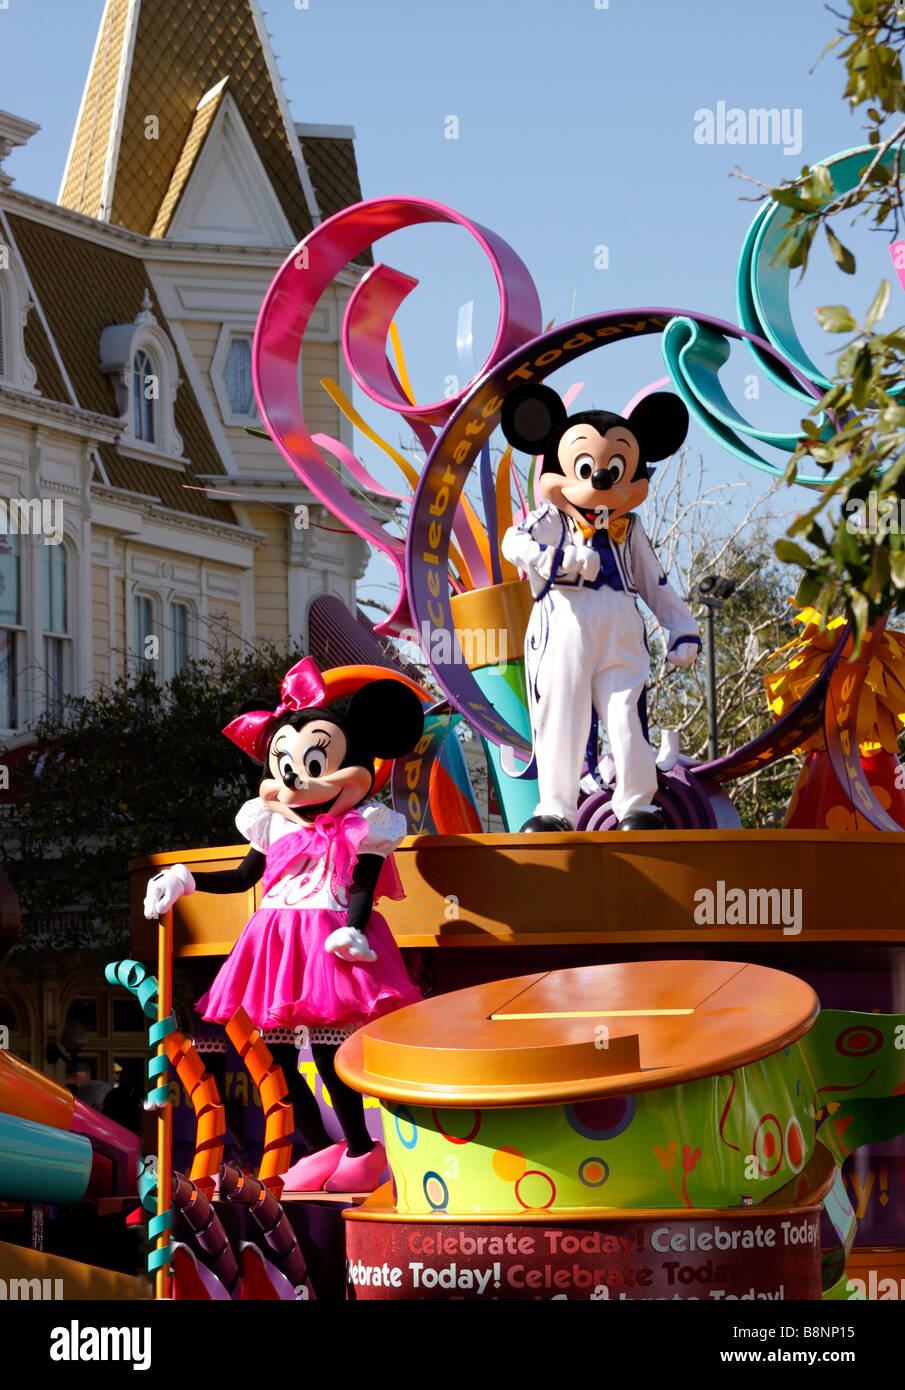 Topolino e Minnie Mouse su parade float, Main Street USA, Walt Disney World il Parco a Tema del Regno Magico, Orlando, Florida, Stati Uniti d'America Foto Stock